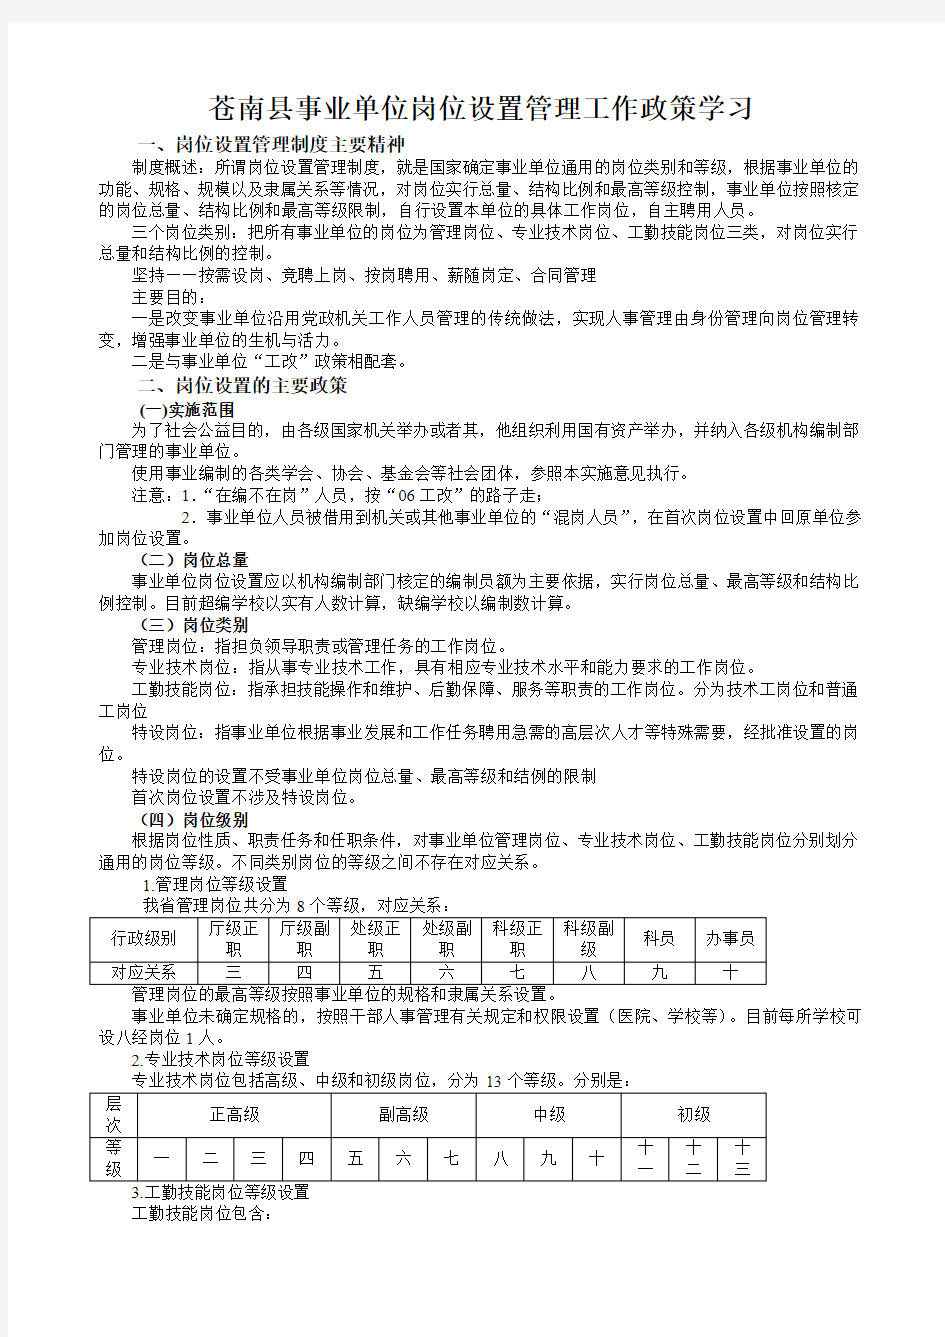 苍南县事业单位岗位设置管理工作政策学习